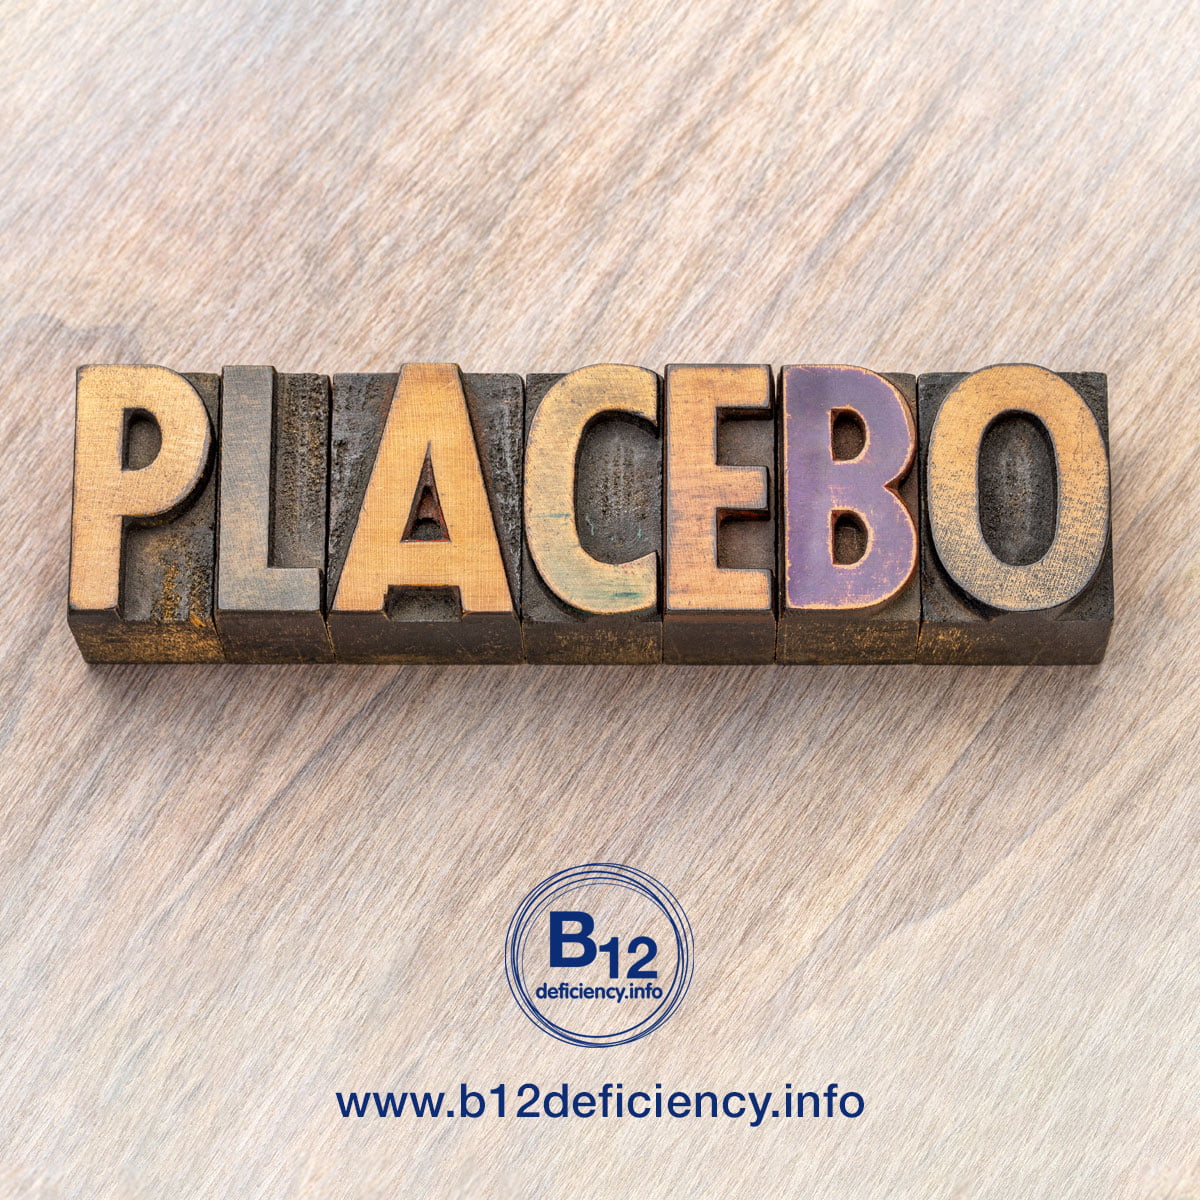 FBI-B12-Placebo